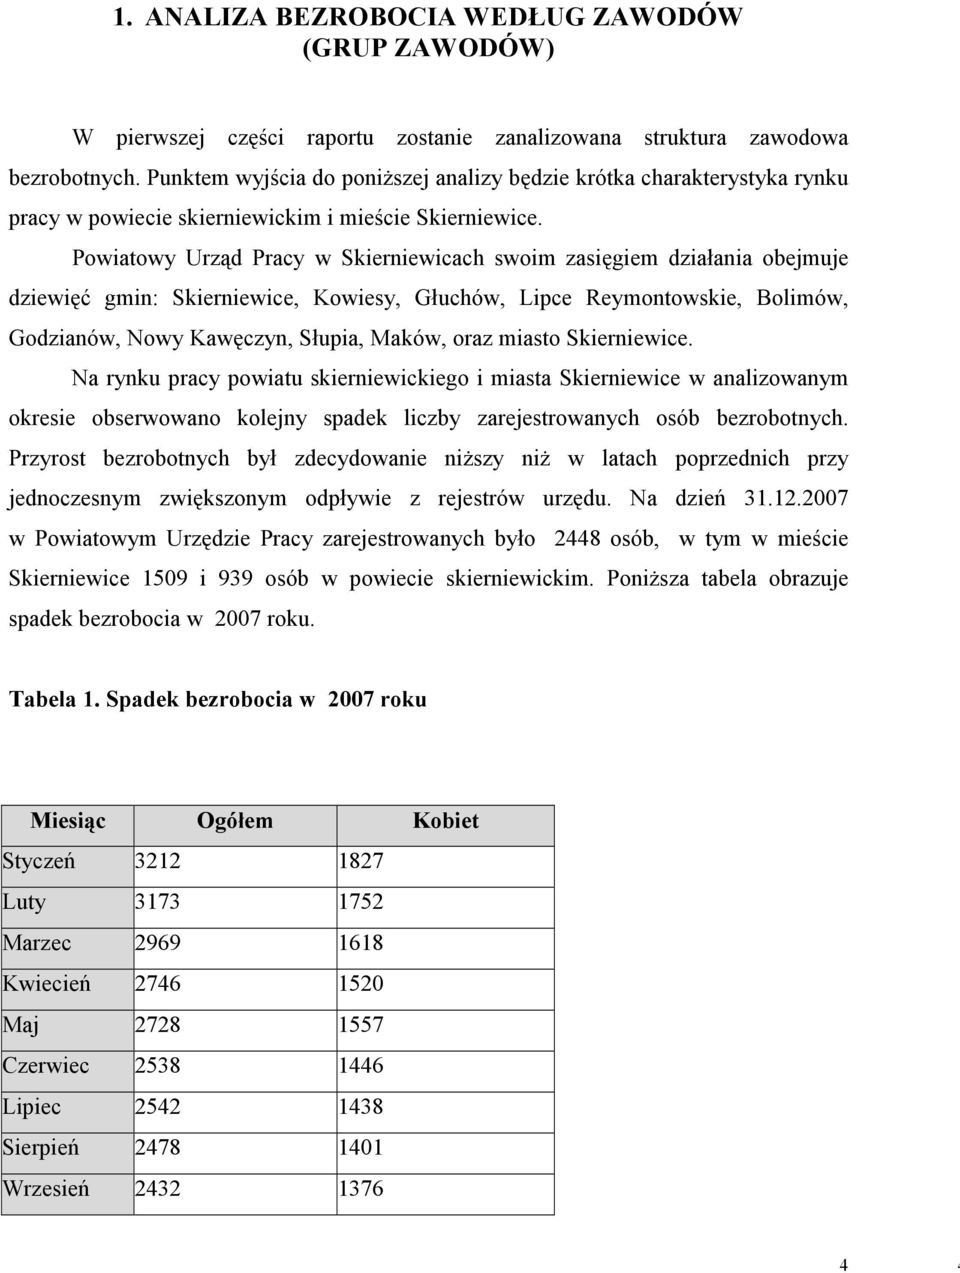 Powiatowy Urząd Pracy w Skierniewicach swoim zasięgiem działania obejmuje dziewięć gmin: Skierniewice, Kowiesy, Głuchów, Lipce Reymontowskie, Bolimów, Godzianów, Nowy Kawęczyn, Słupia, Maków, oraz